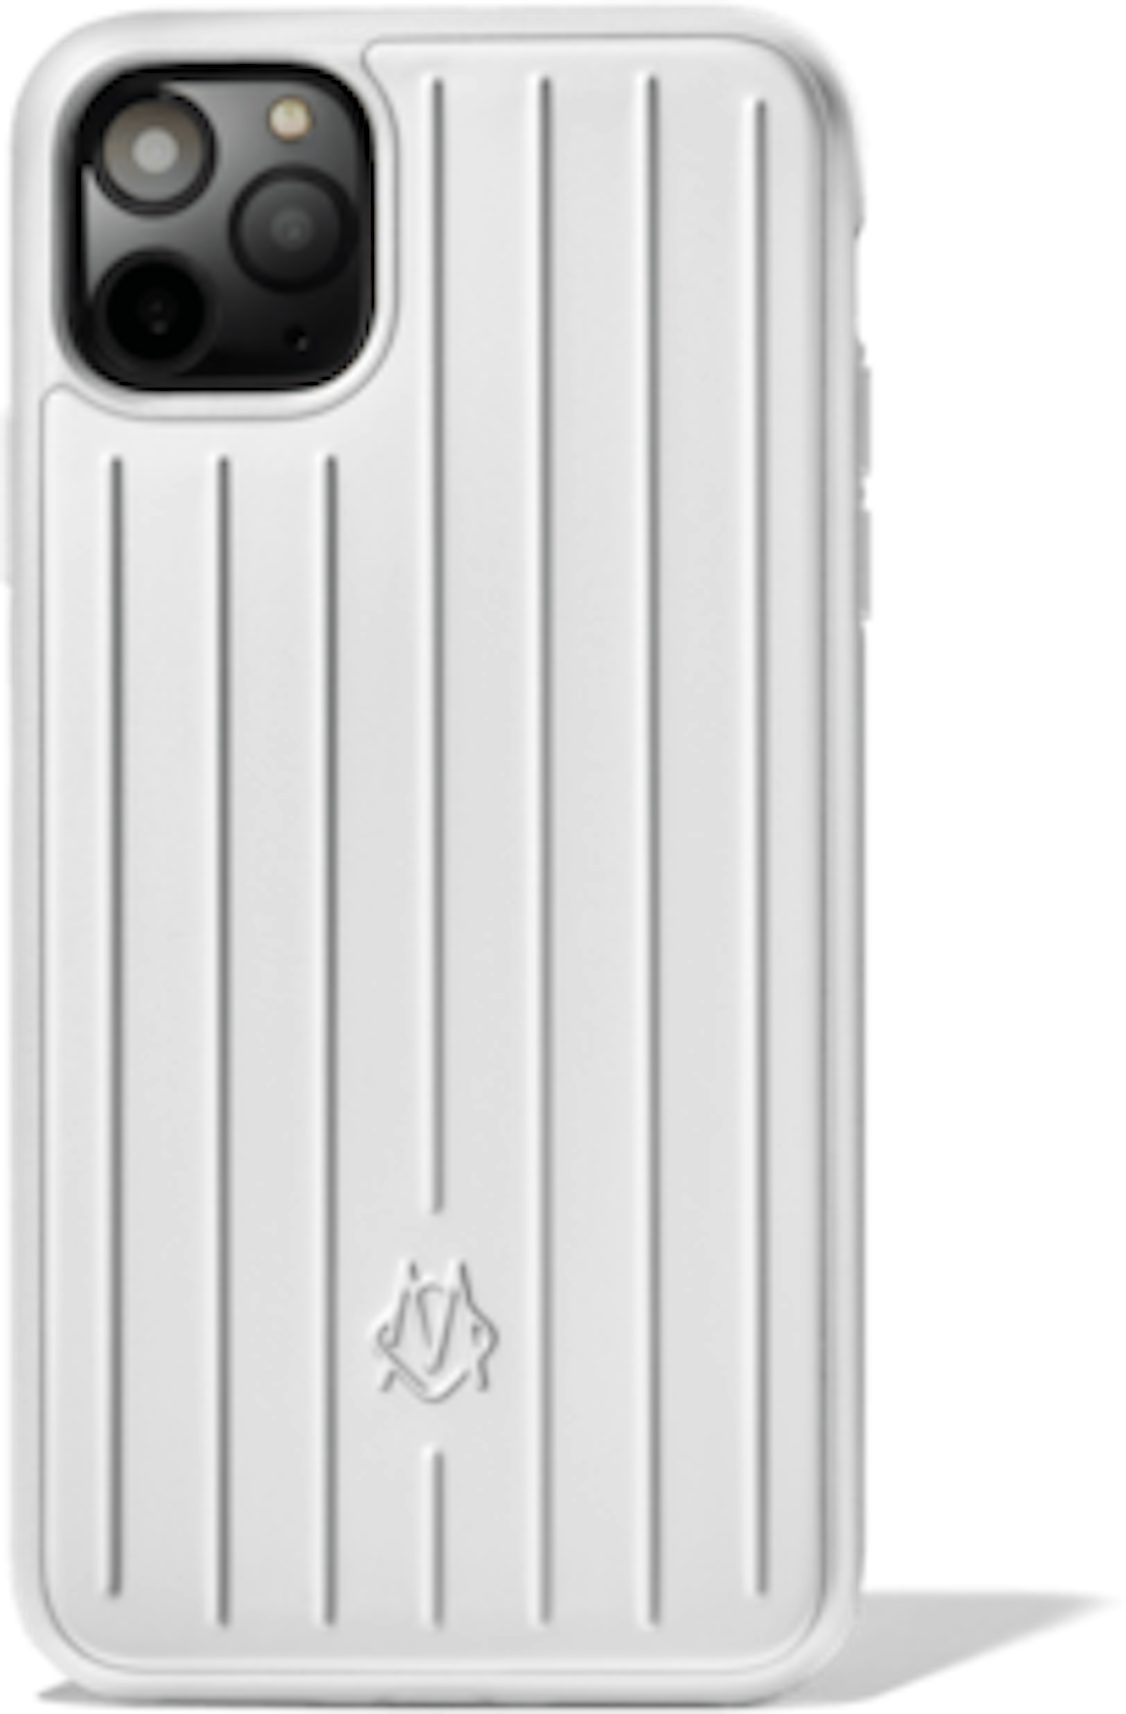 Classic Black Louis Vuitton X Supreme iPhone 12 Pro Case